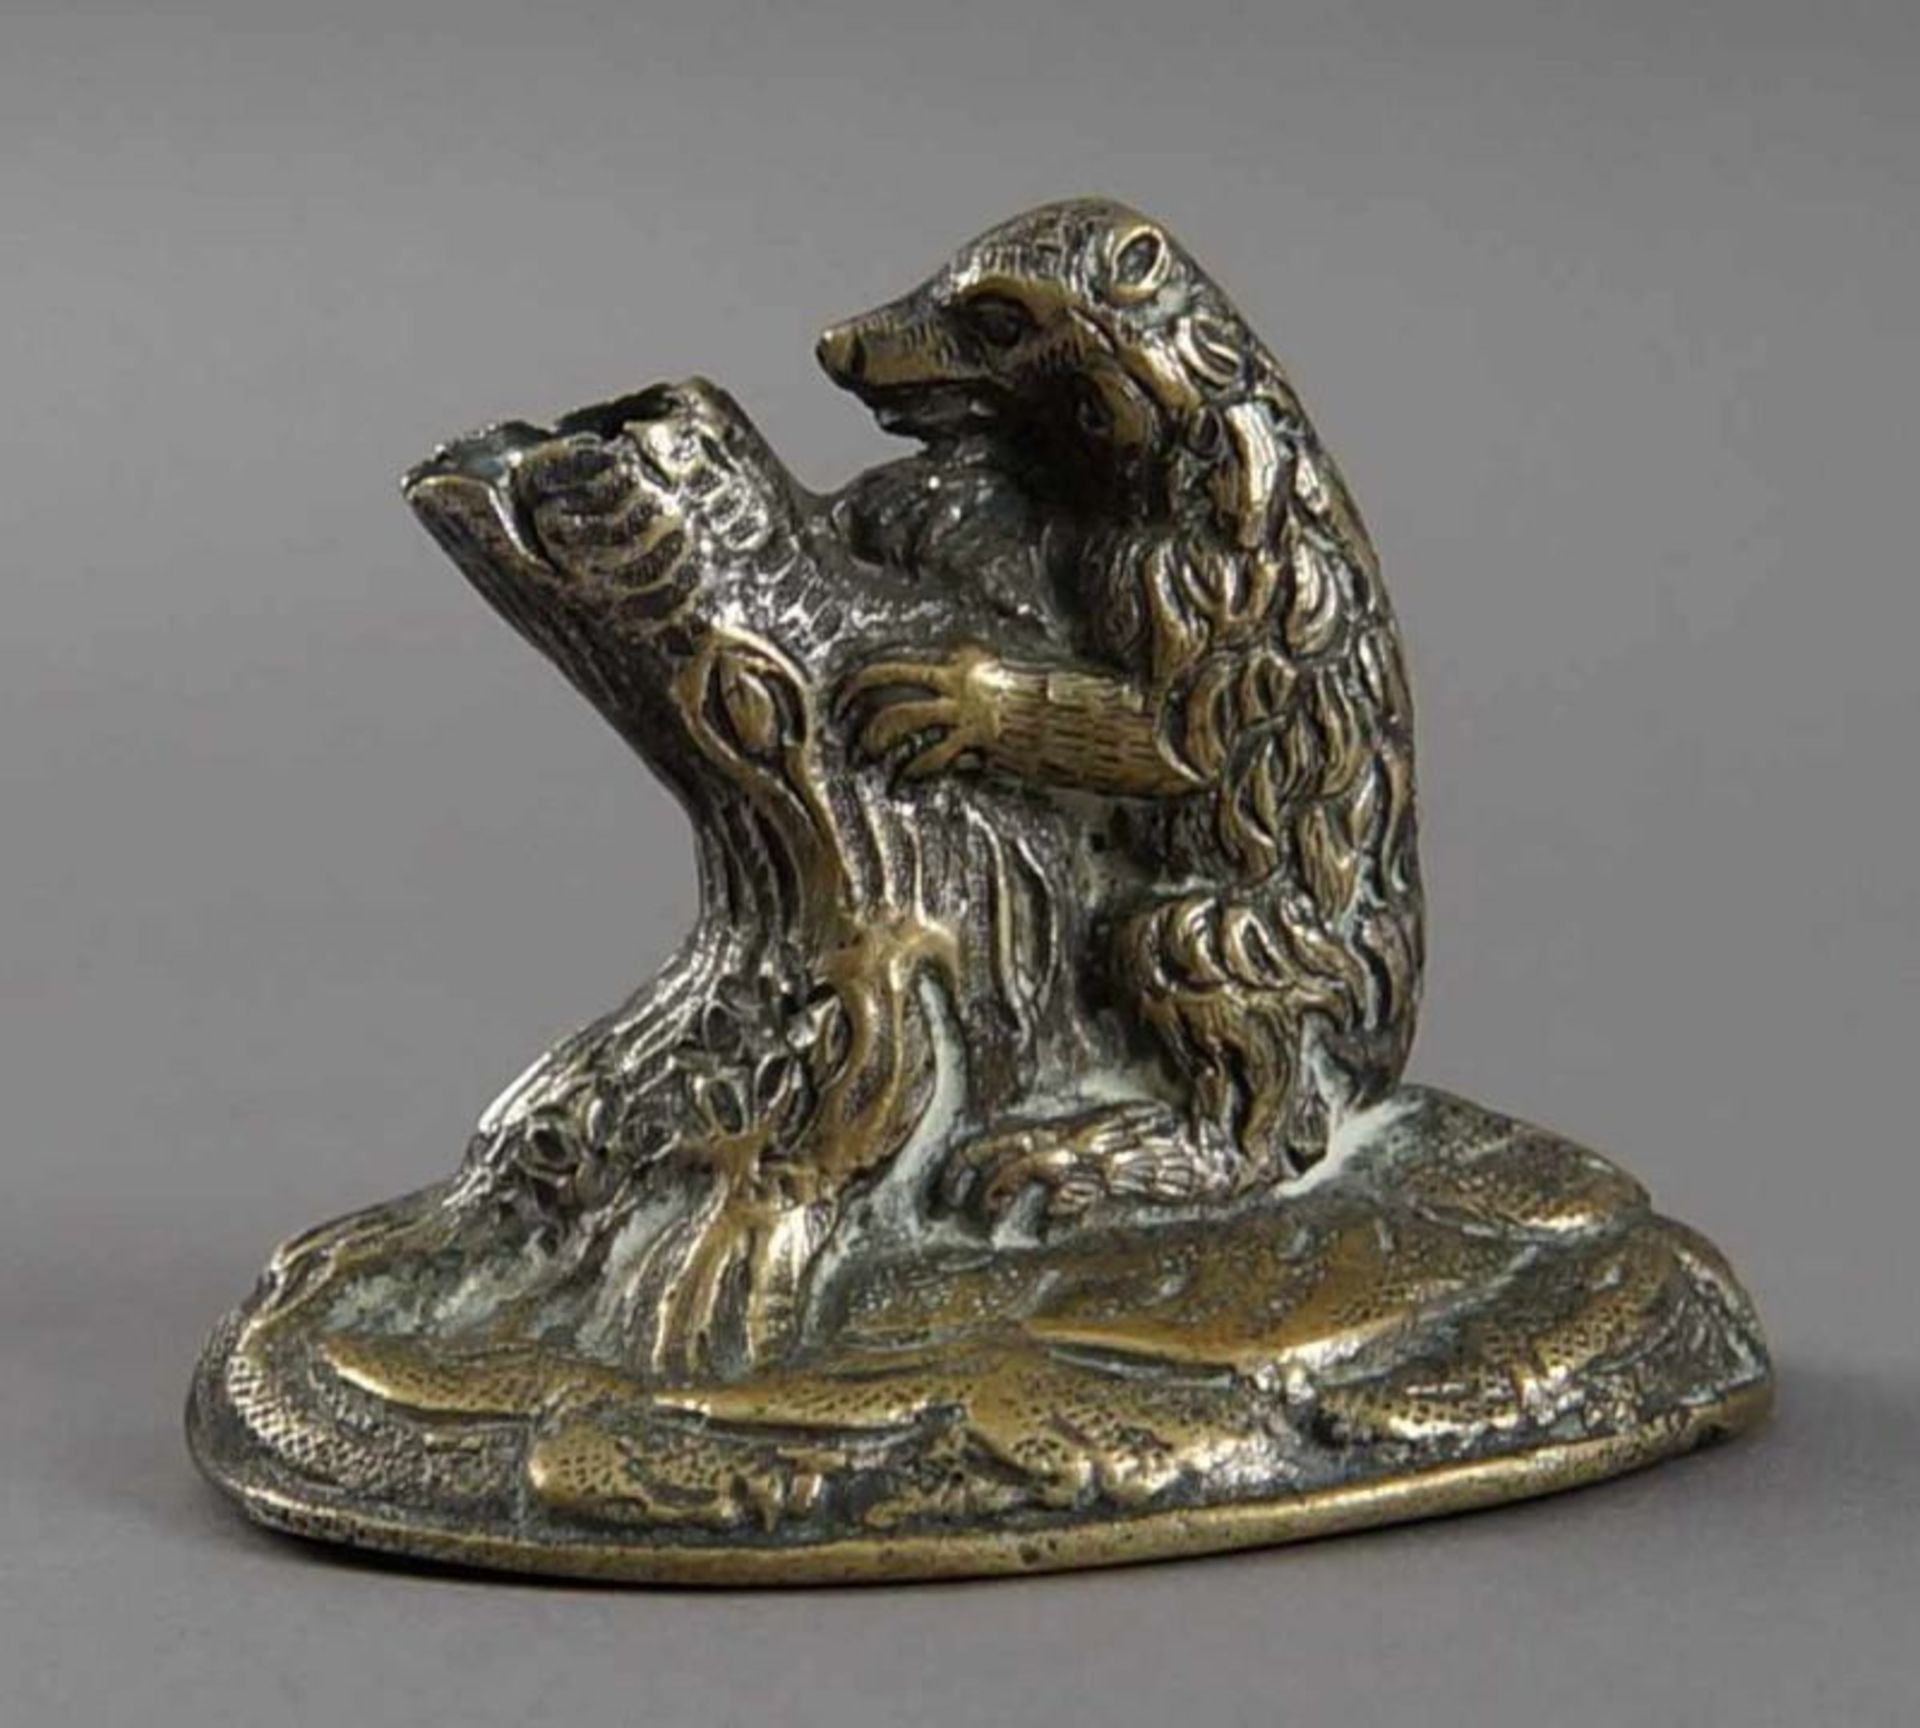 Federhalter, Bär an Baumstamm, aus Bronze, 17. JH, H 6 cm 20.17 % buyer's premium on the hammer